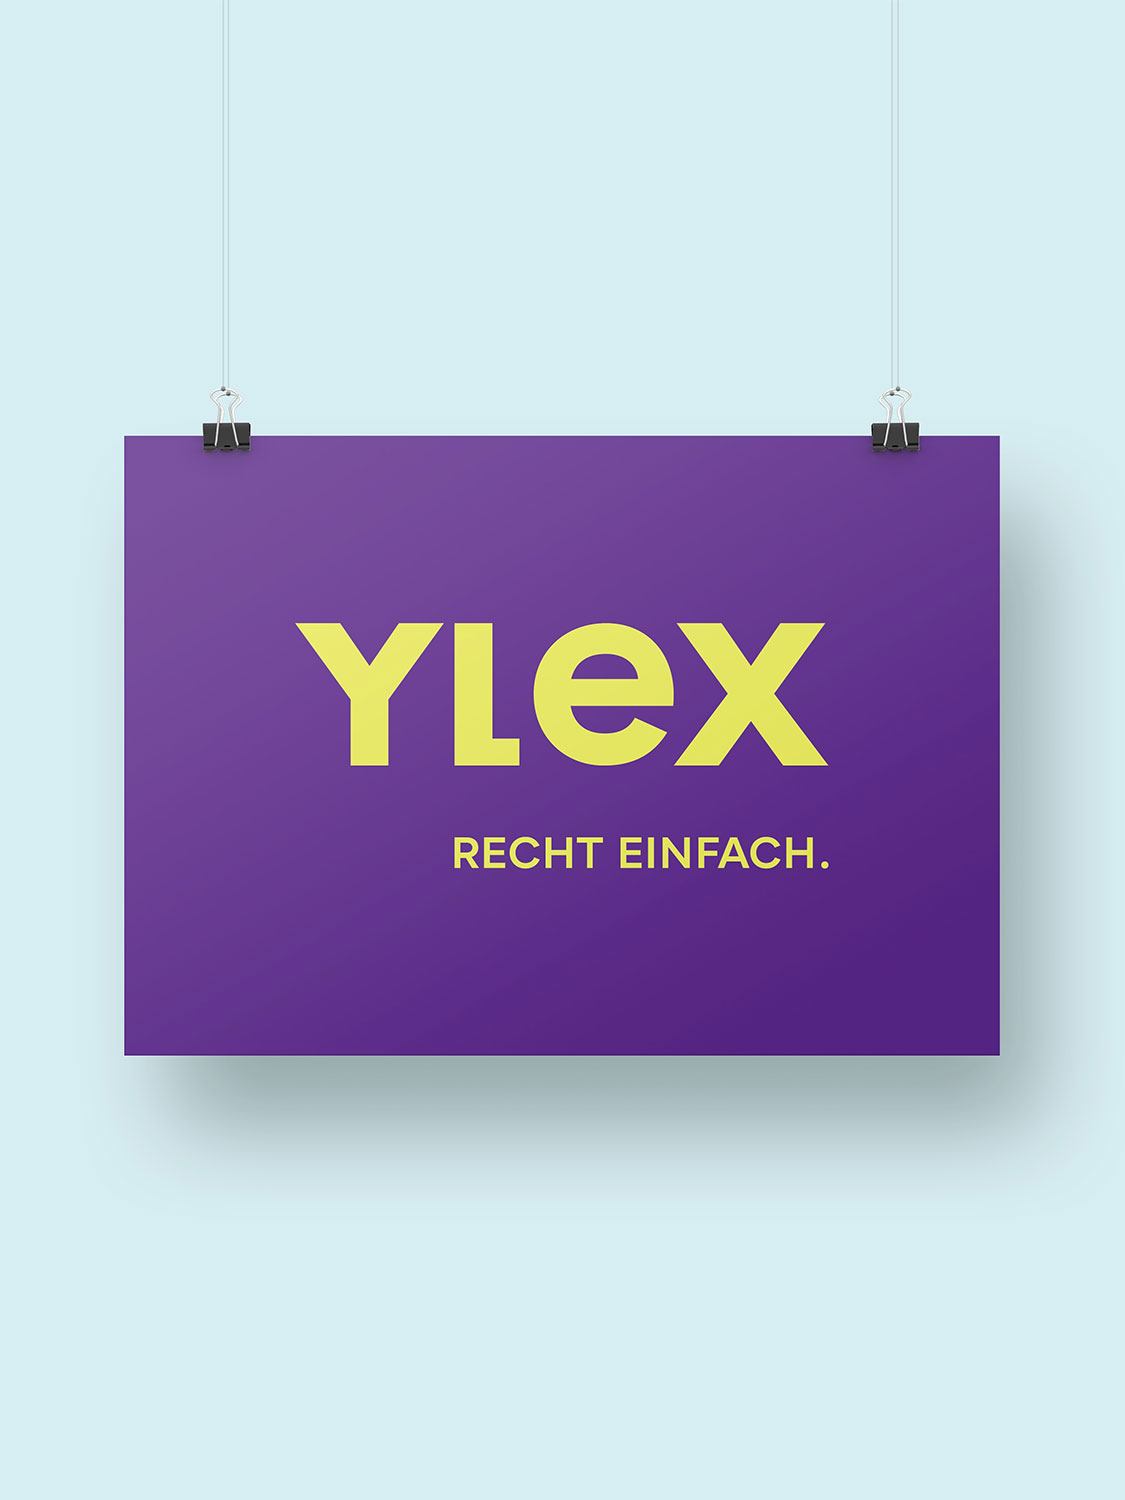 YLEX Logo